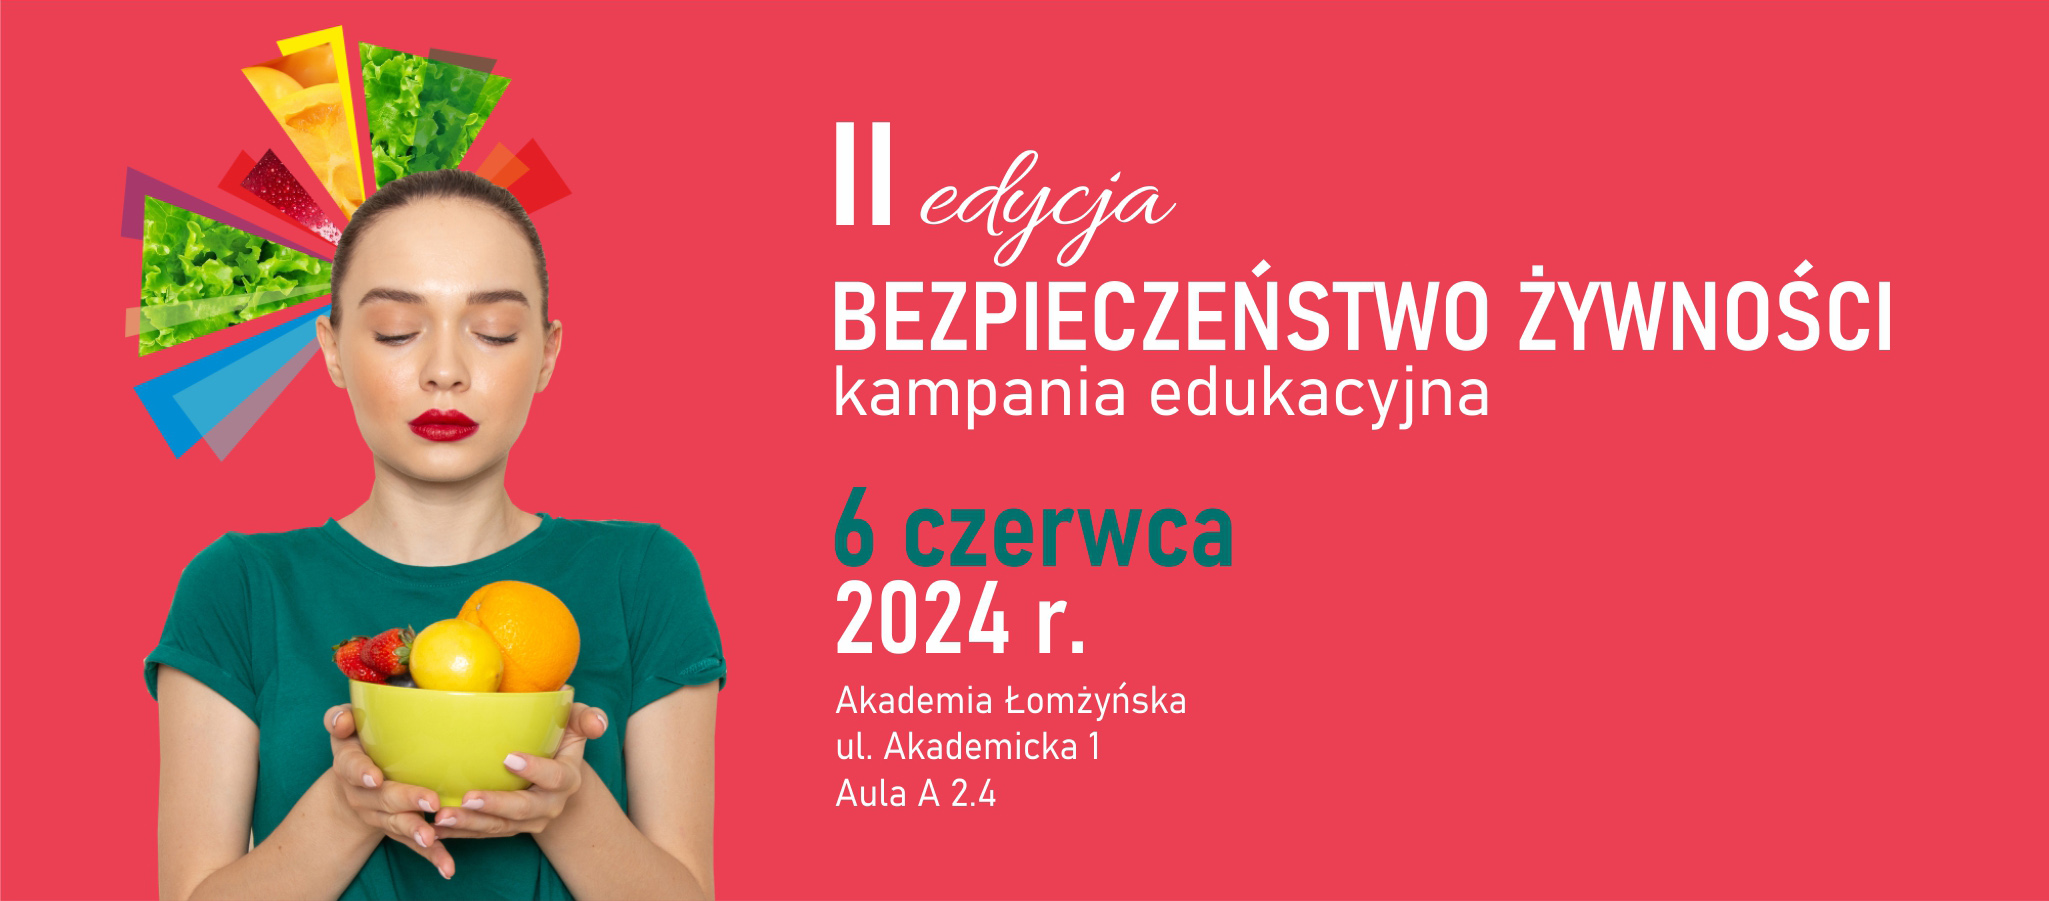 II edycja kampanii edukacyjnej Bezpieczeństwo żywności, 6 czerwca 2024 r. w Akademii Łomżyńskiej ul. Akademicka 1, Aula A 2.4